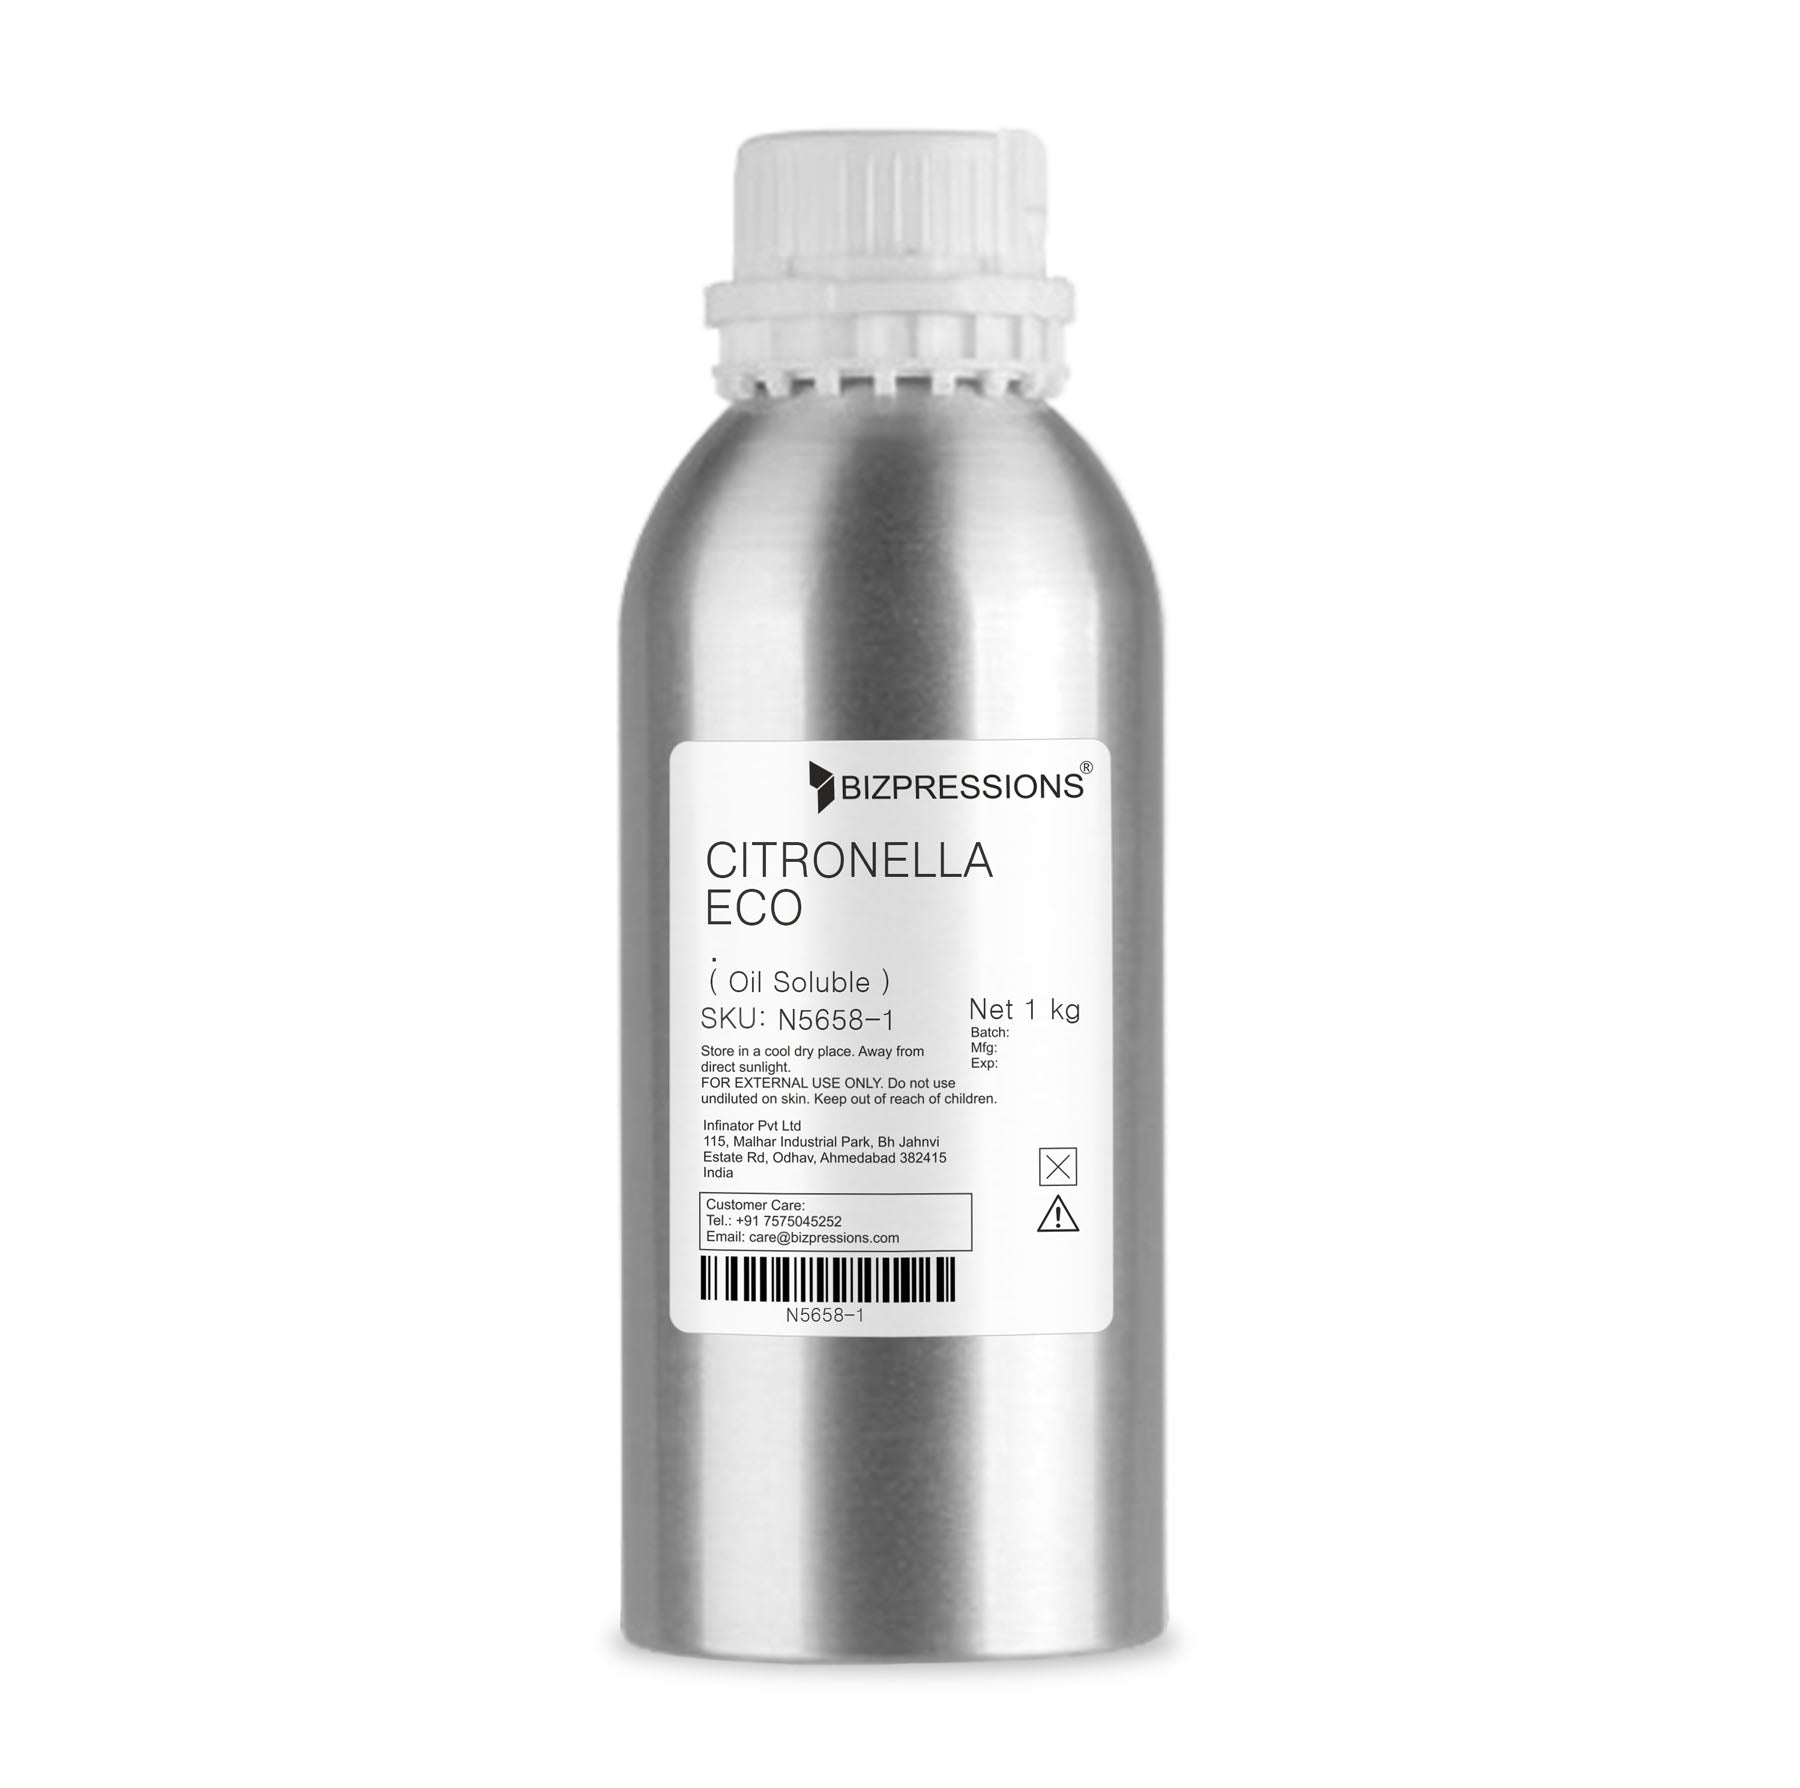 CITRONELLA ECO - Fragrance ( Oil Soluble ) - 1 kg